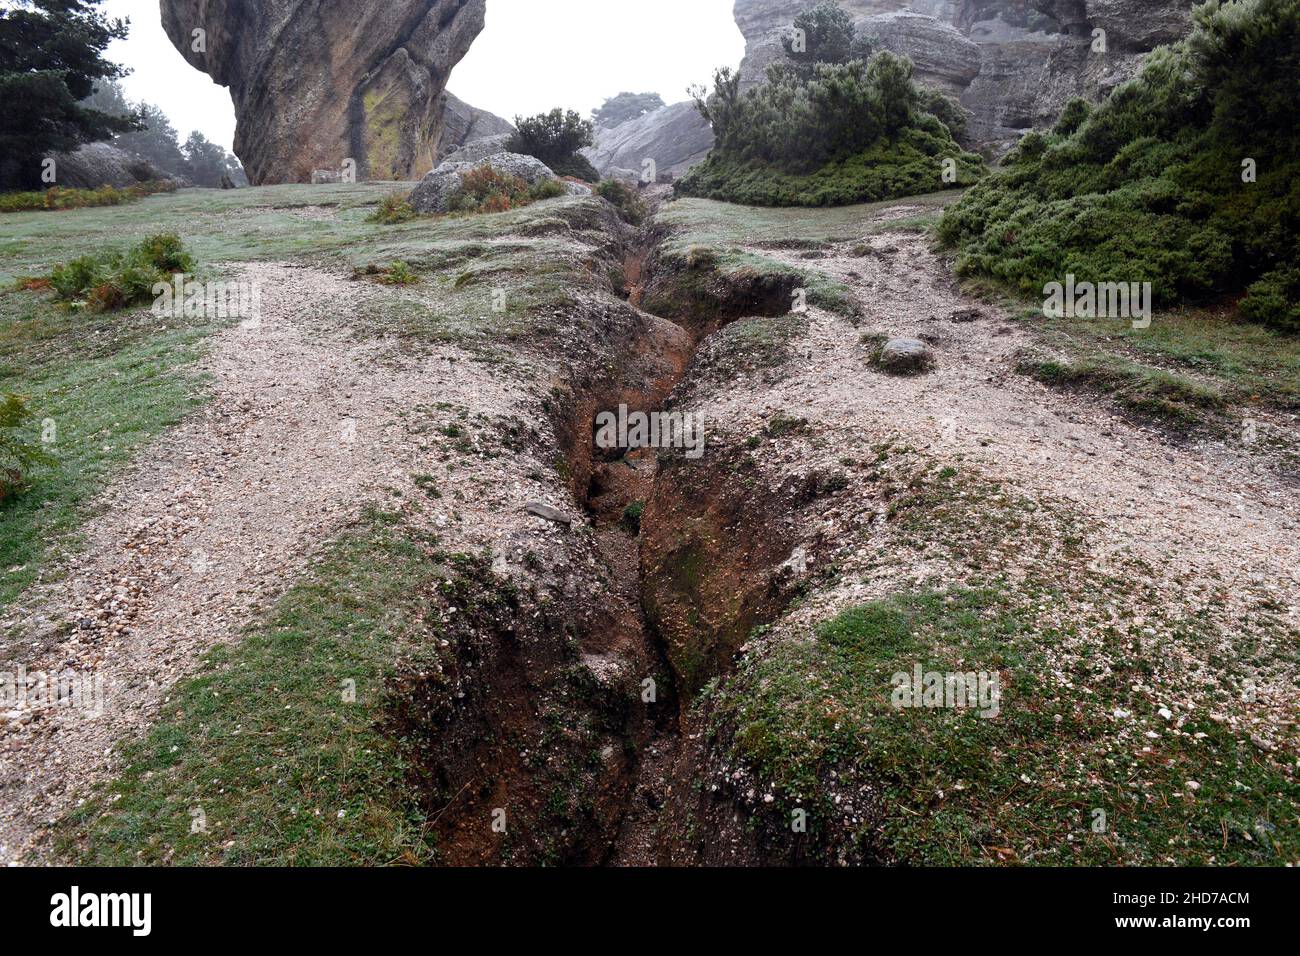 Erosión del suelo (barranca) por la lluvia. Castroviejo, Duruelo de la Sierra, Soria, Castilla y León, España. Foto de stock